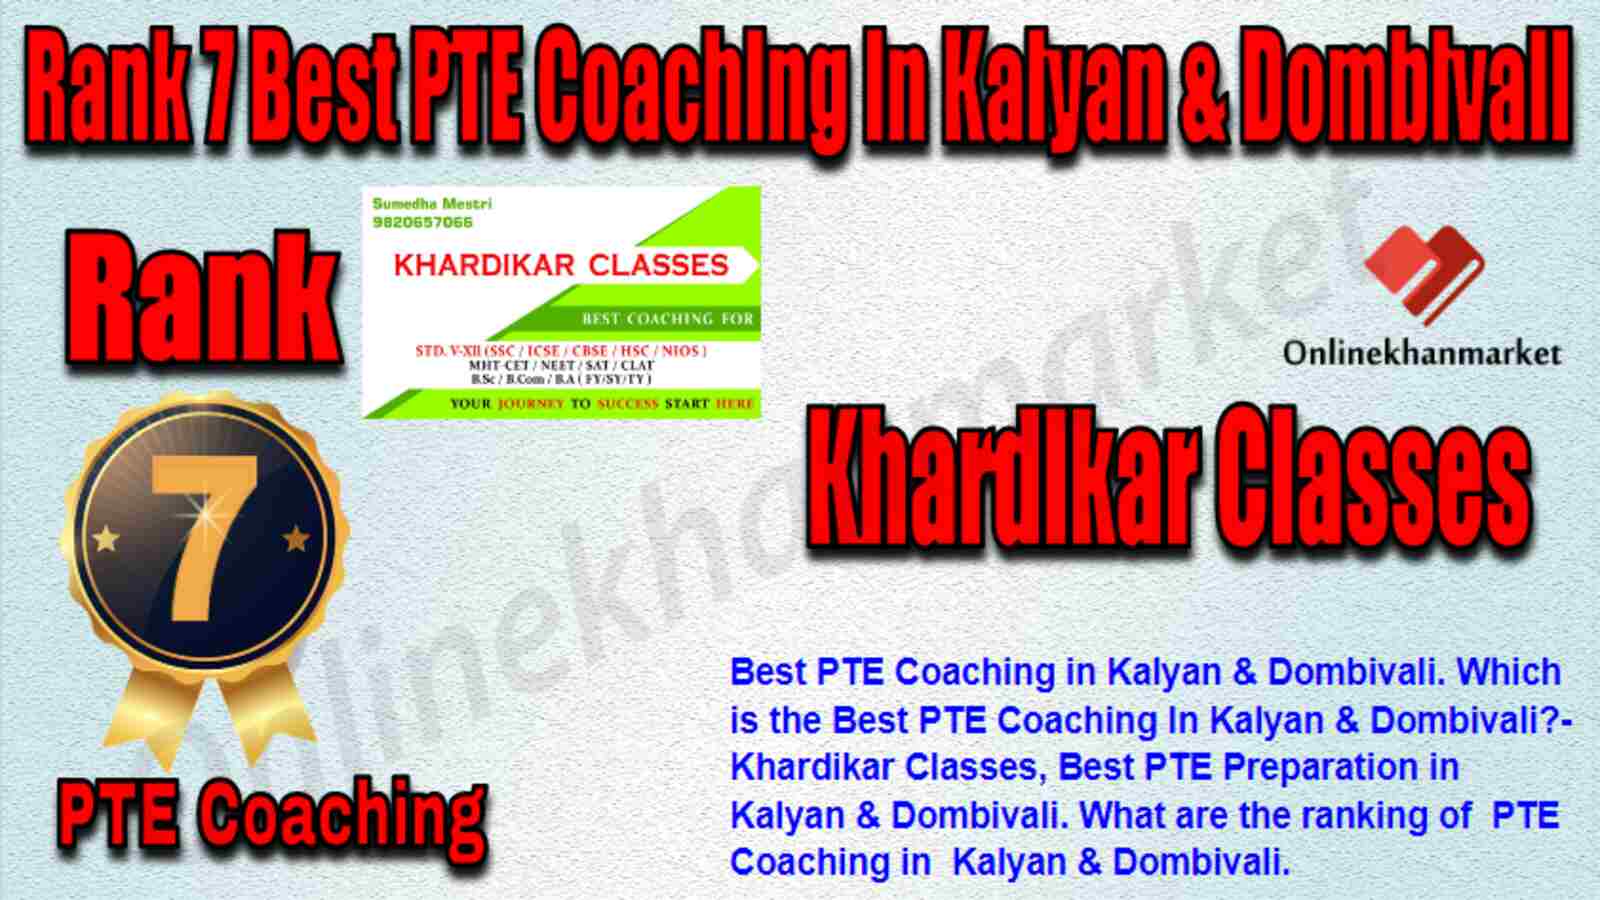 Rank 7 Best PTE Coaching in Kalyan & Dombivali